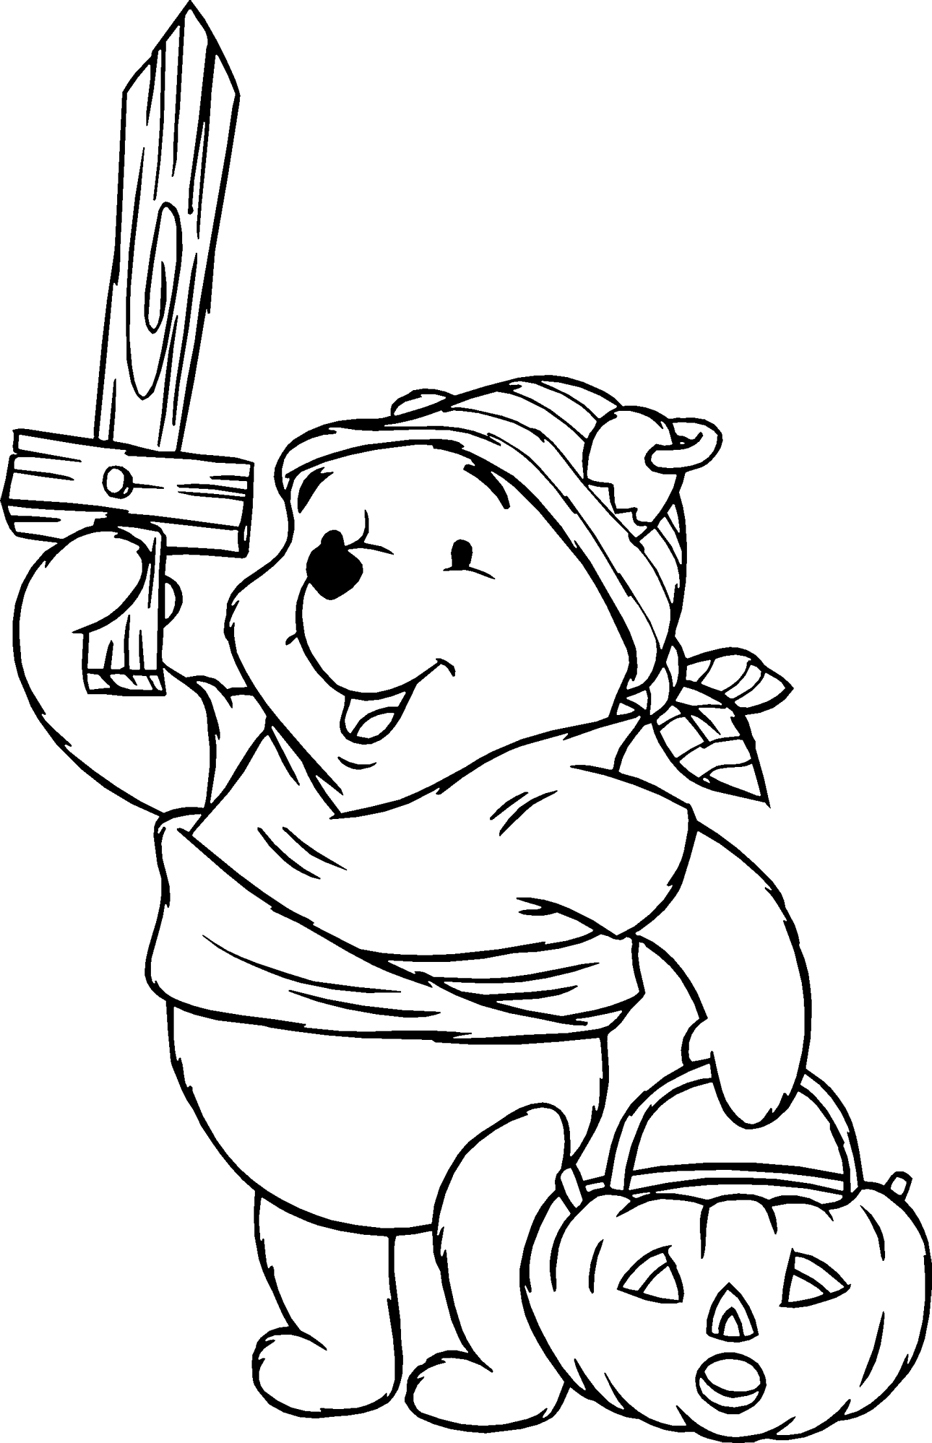 L’ orsetto Winnie The Pooh con spada di legno e zucca di Halloween da colorare